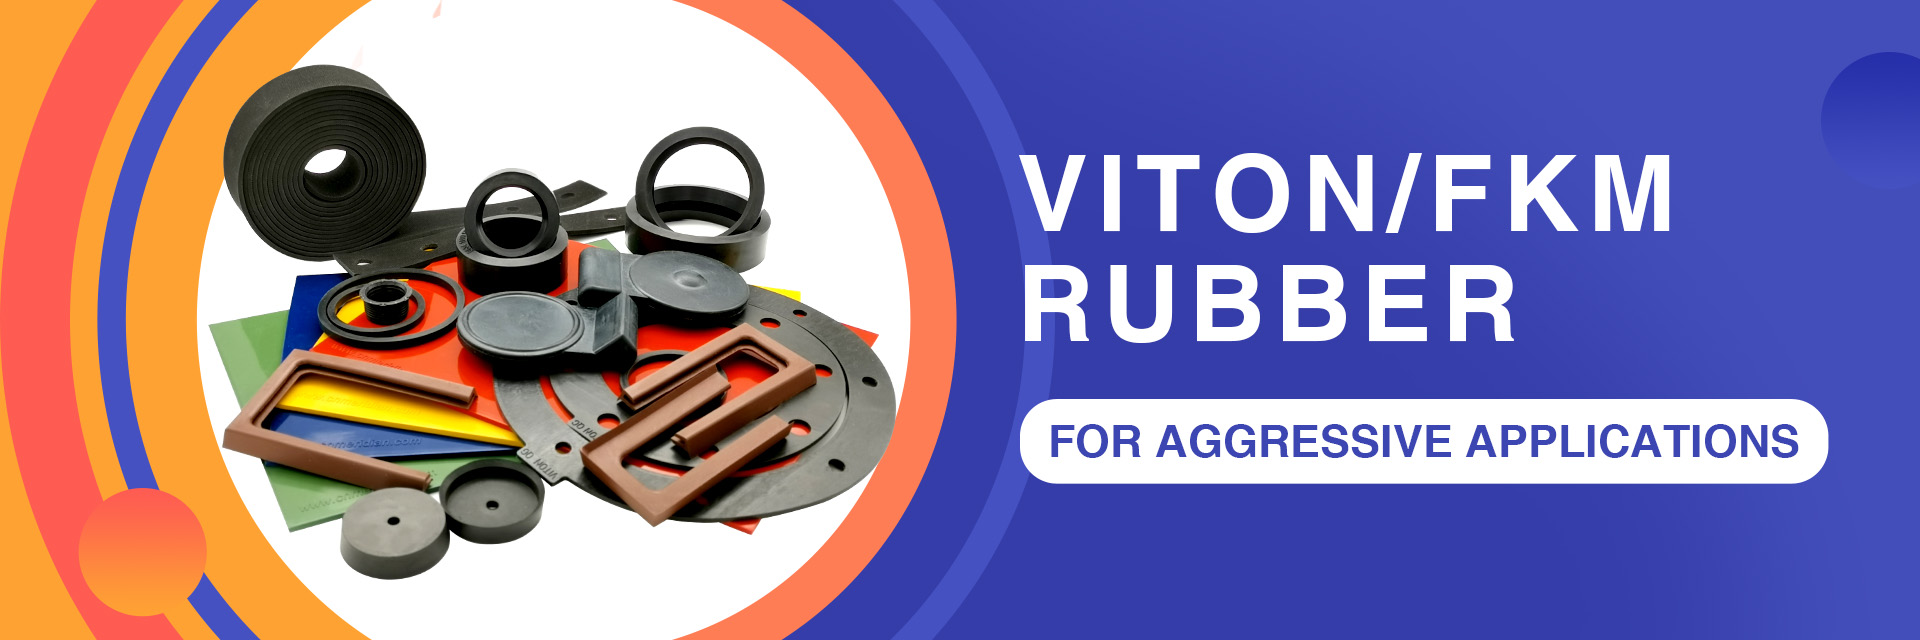 Viton FKM rubber products